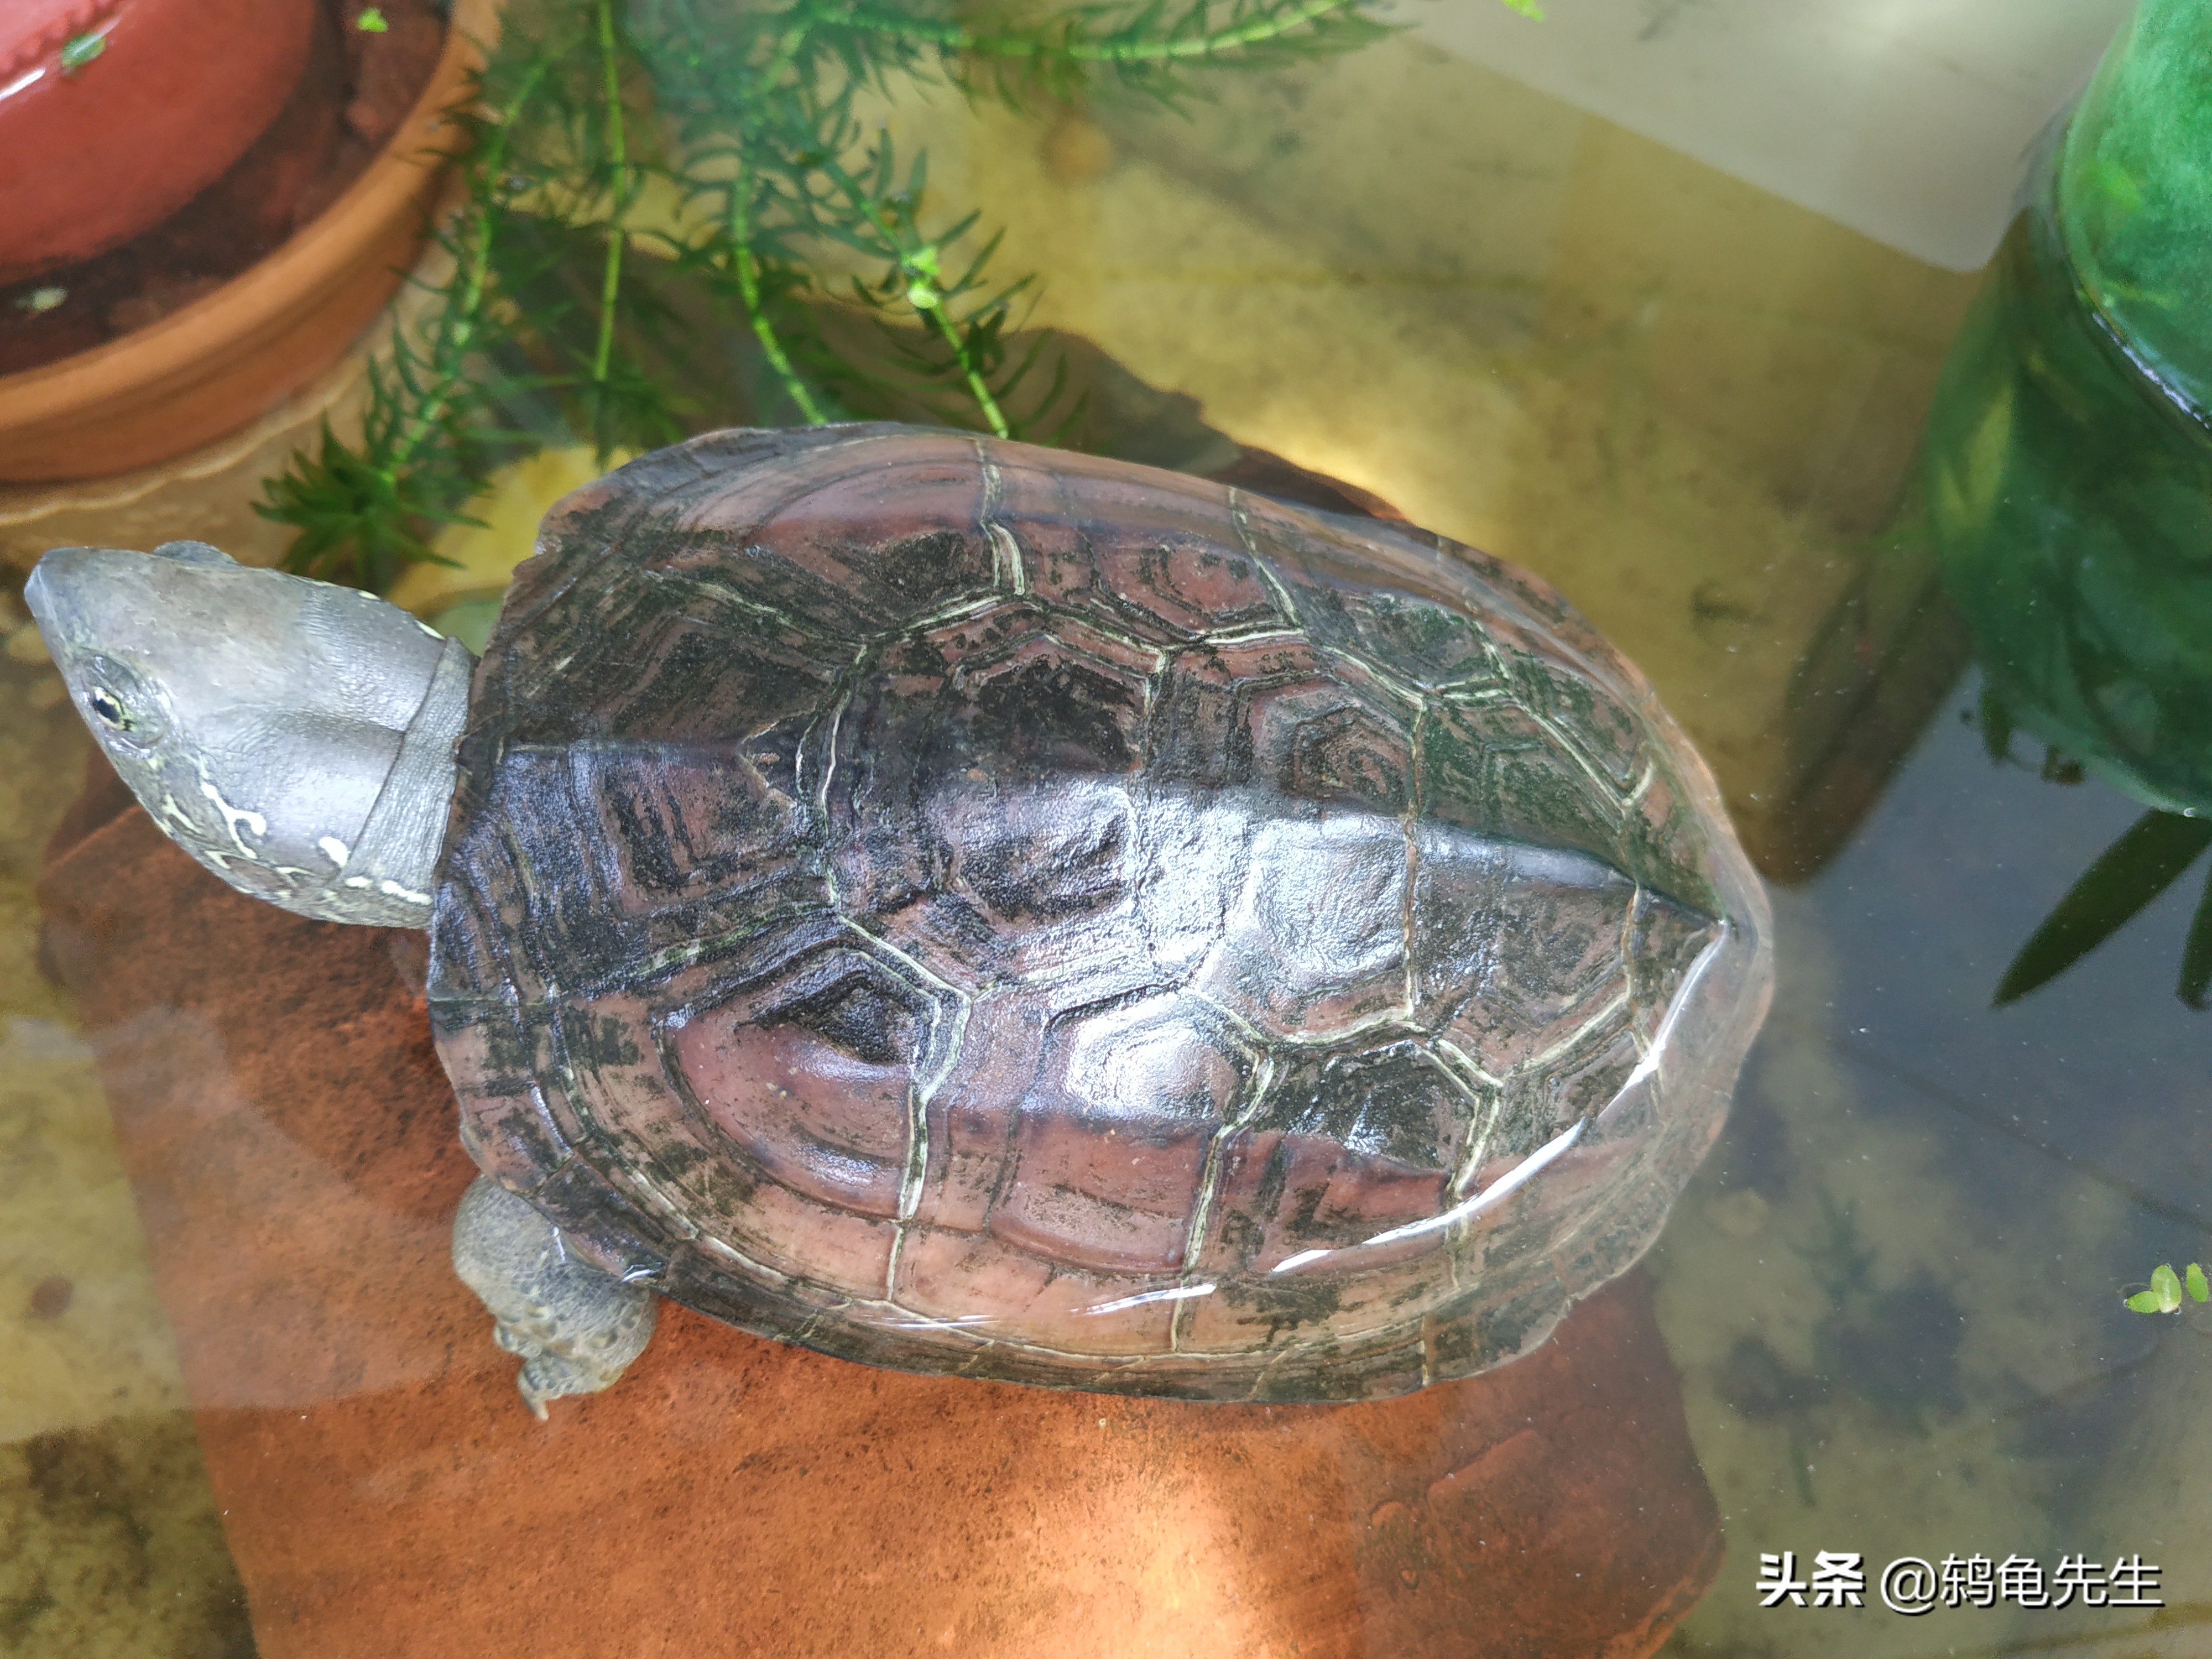 乌龟什么时候冬眠，主要取决于外界温度？